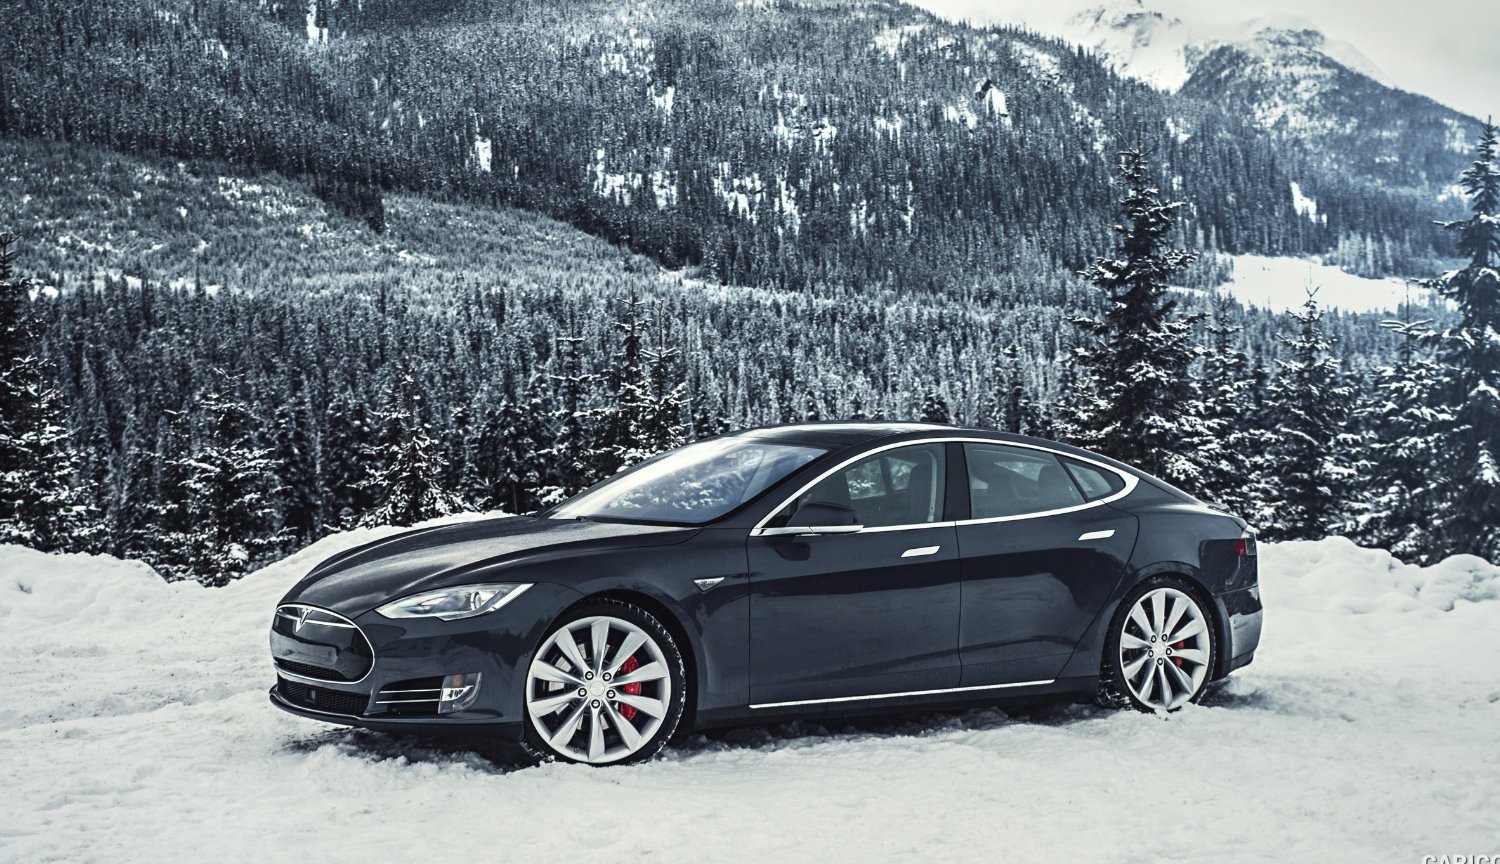 #filmy | Jak działa autopilot Tesla w śnieżną pogodę?